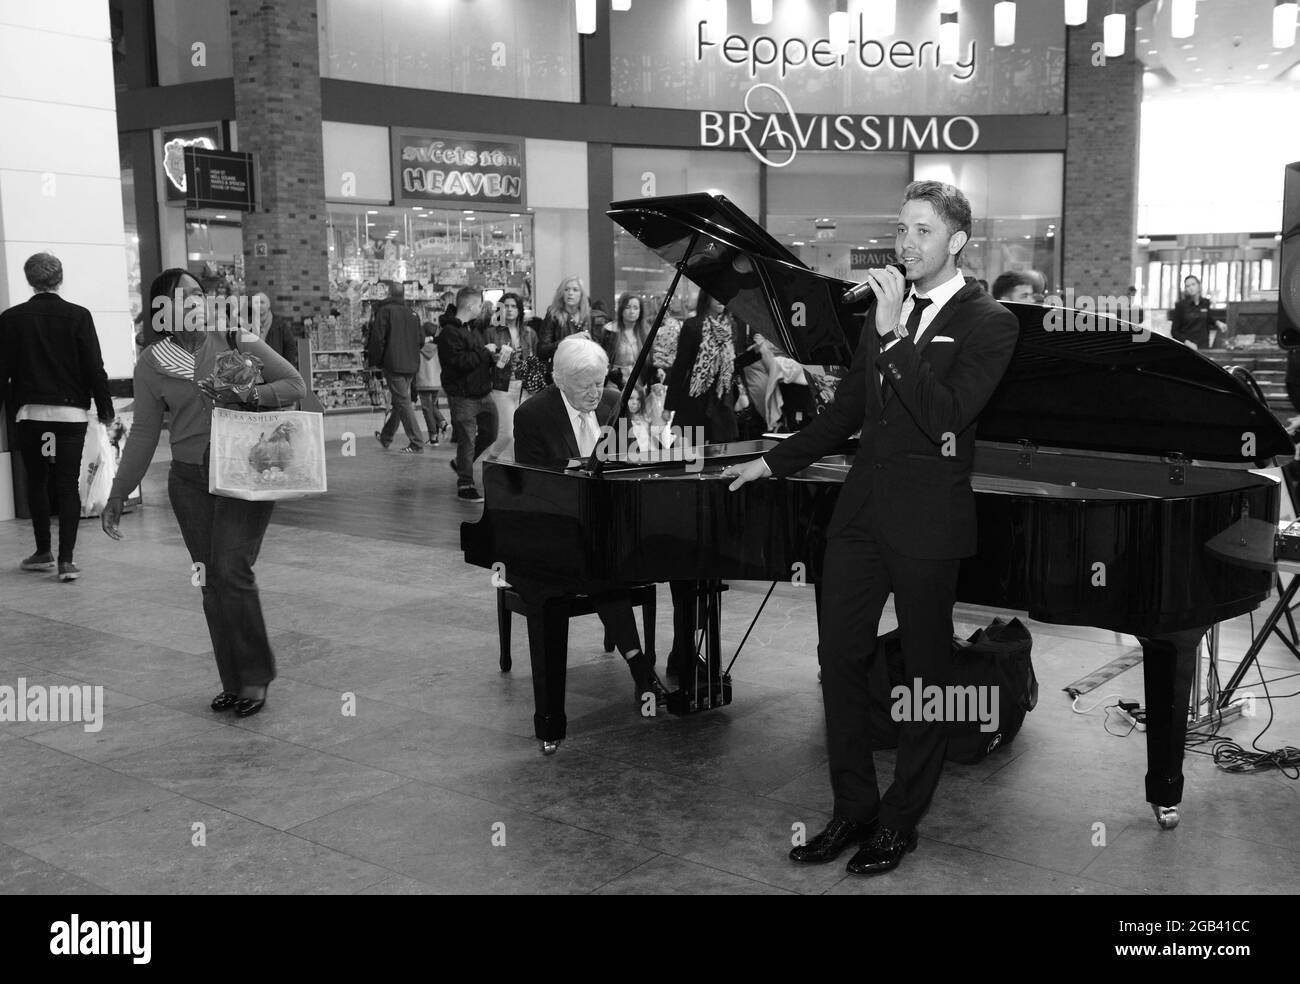 La chanteuse Jordan Williams et le pianiste de jazz Brian Dee font du shopping au centre commercial Touchwood, Solihull, Grande-Bretagne, Royaume-Uni Banque D'Images